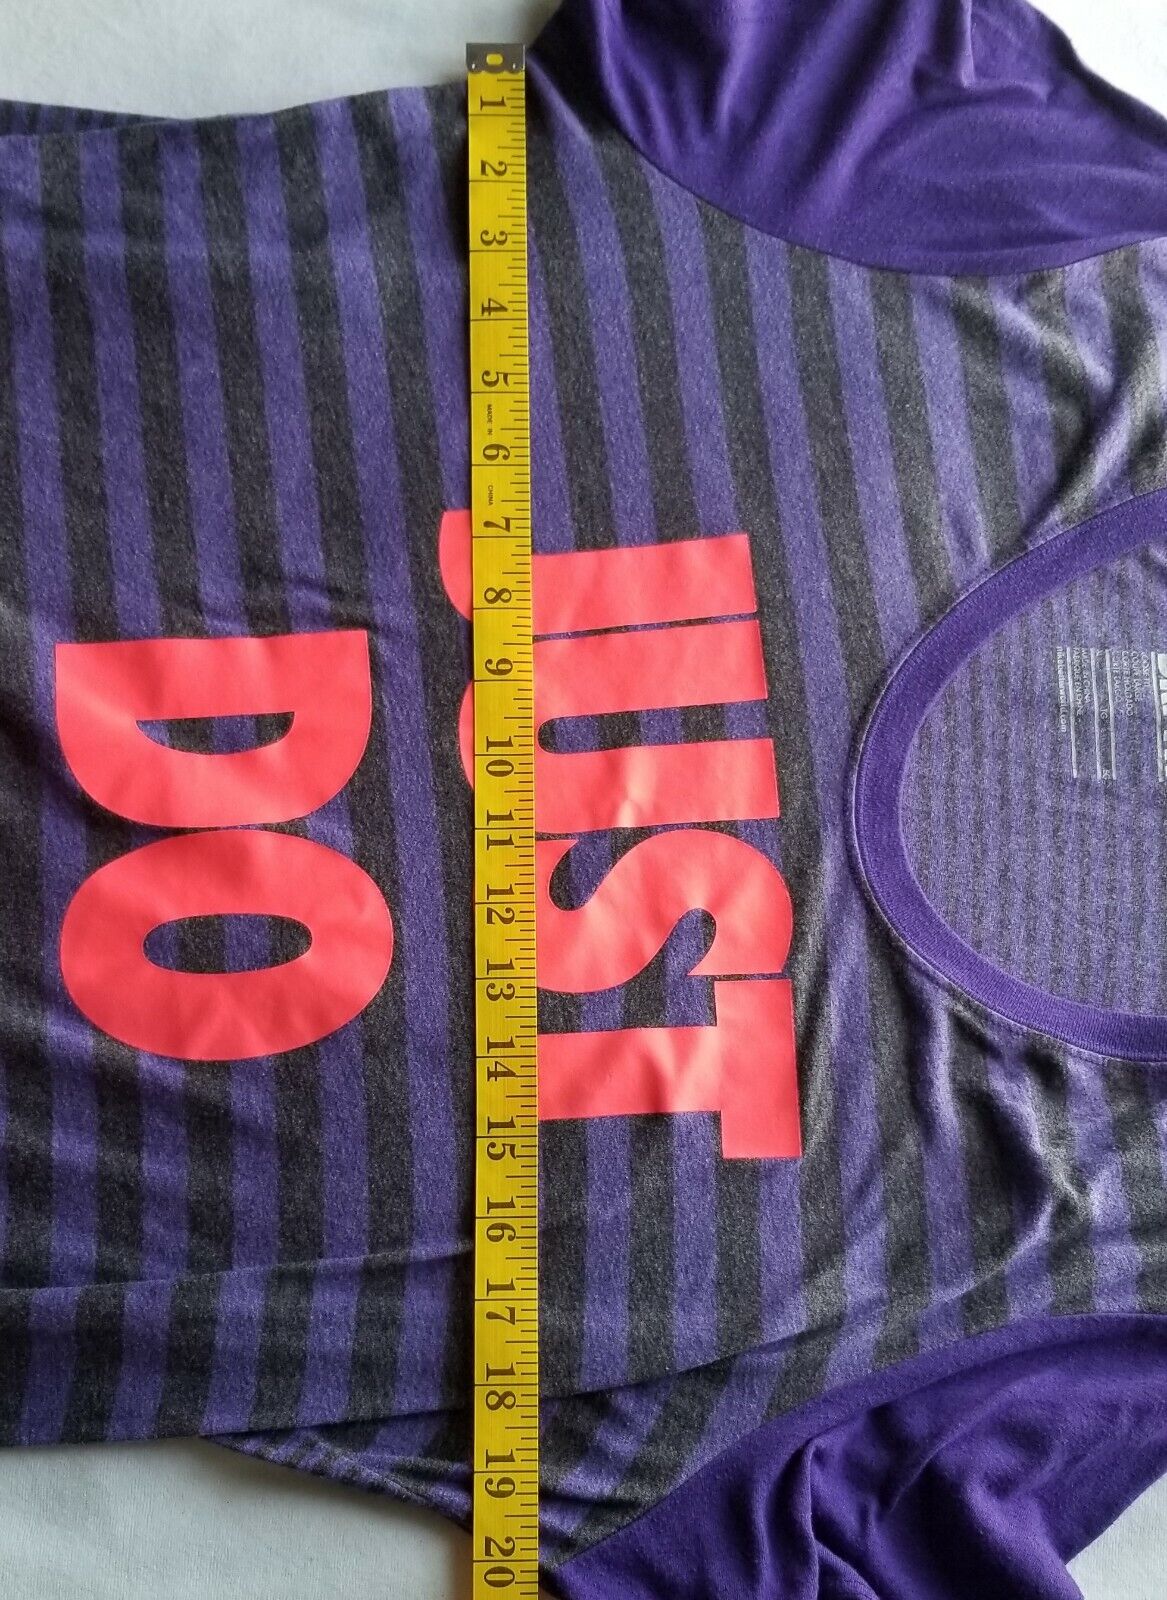 NIKE JUST DO IT Youth XL Striped Tee Purple w Pink Logo RN 56323 Dri Fit  CA05553